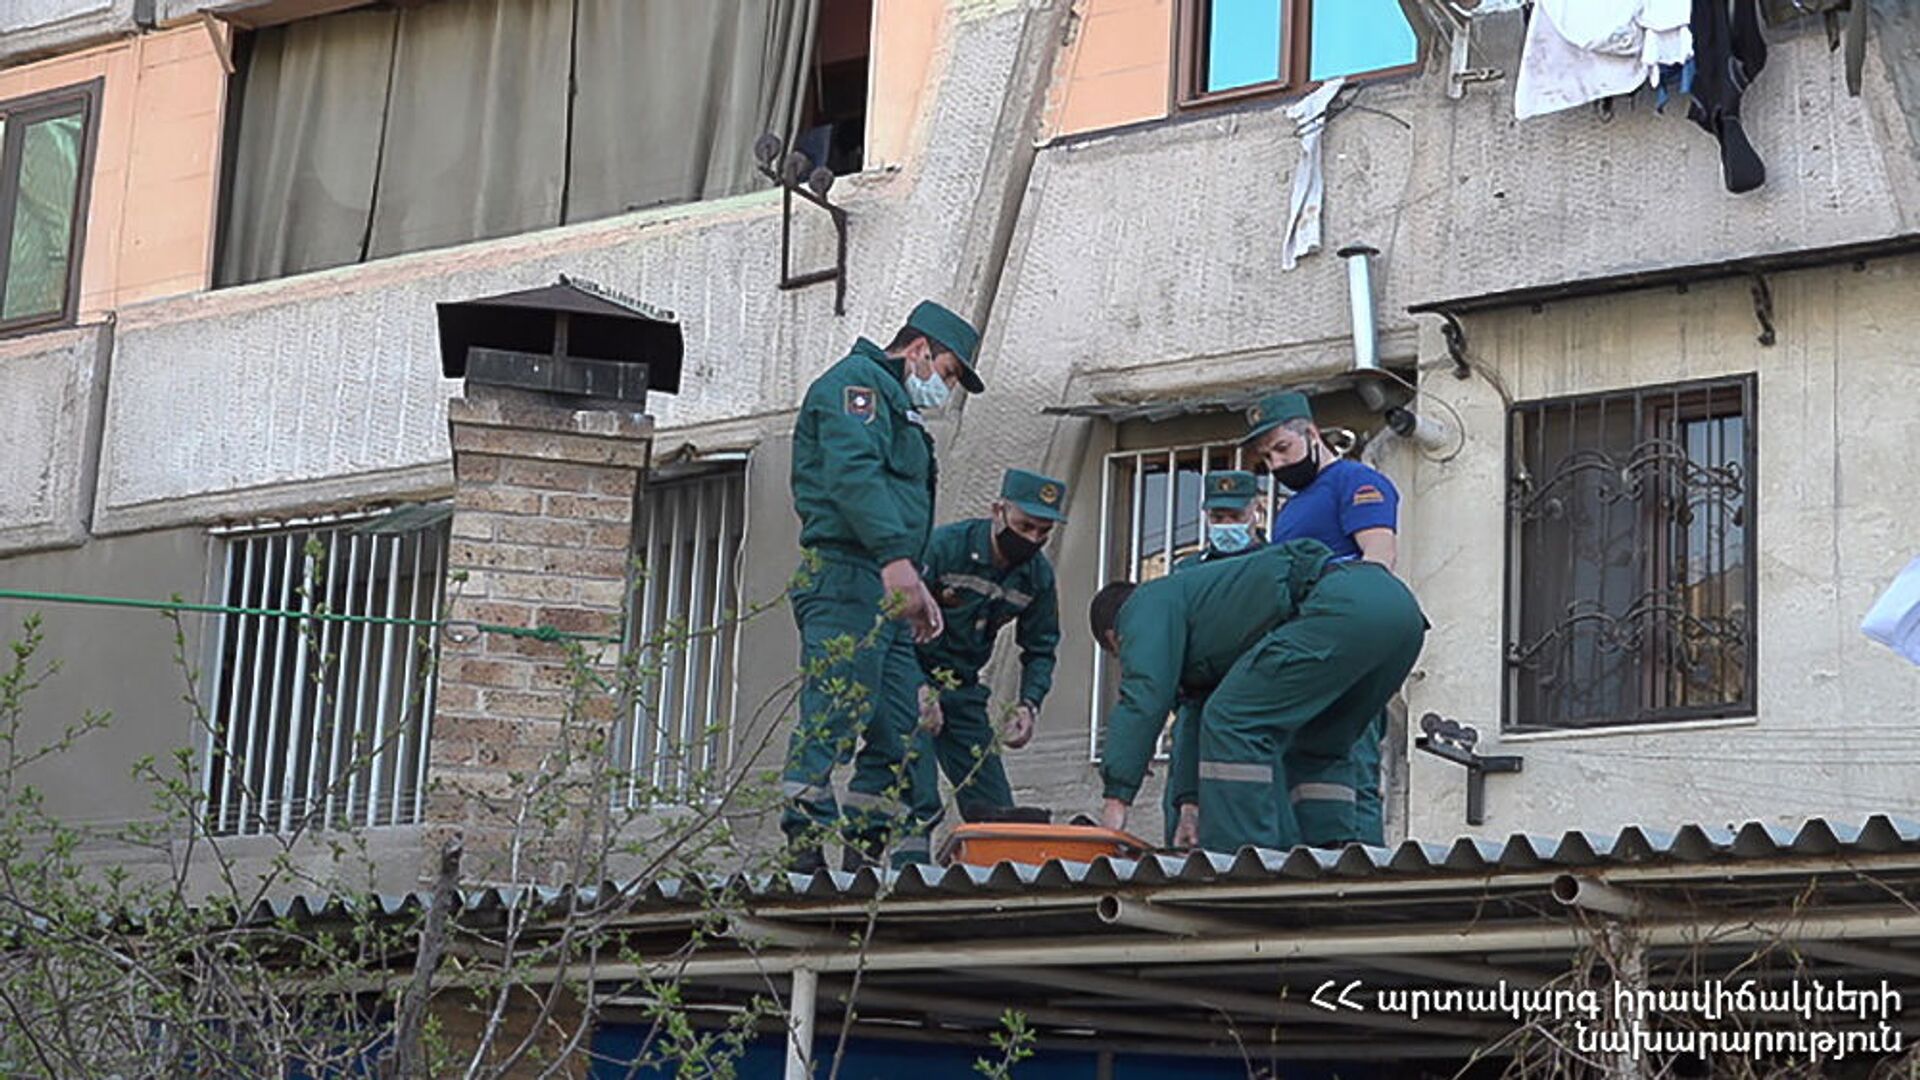 В Ереване мужчина упал с 4-го этажа многоквартирного дома - Sputnik Армения, 1920, 12.04.2021